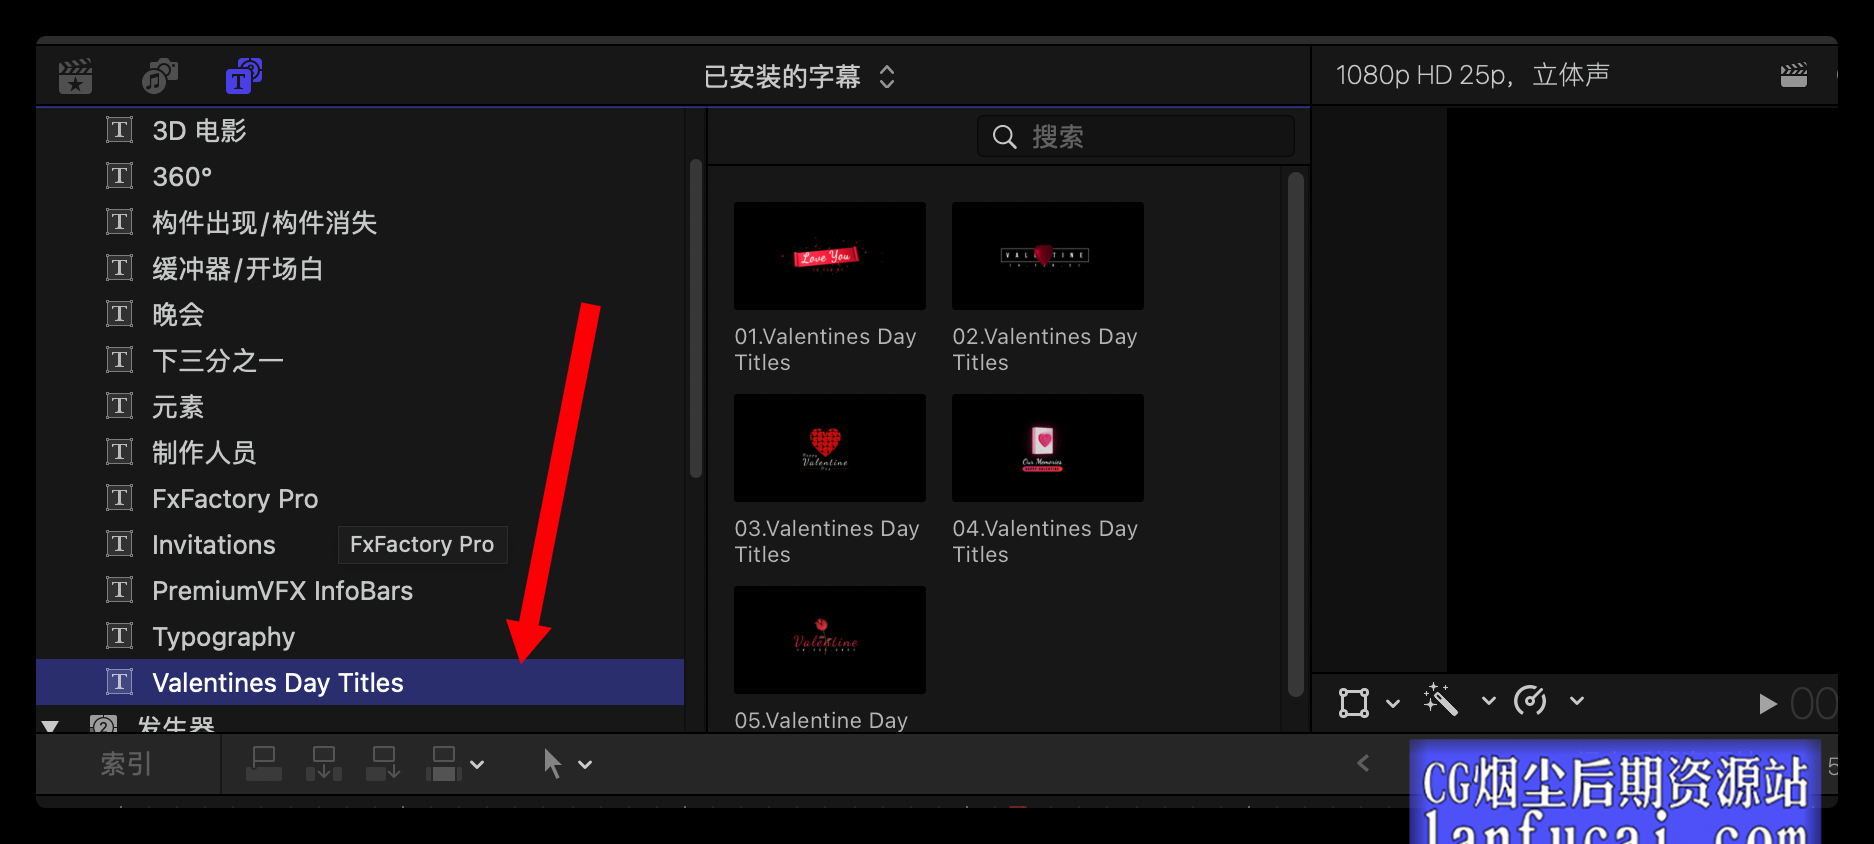 fcpx插件 简约清新婚礼MV影片标题模板 Valentines Day Titles1后期屋